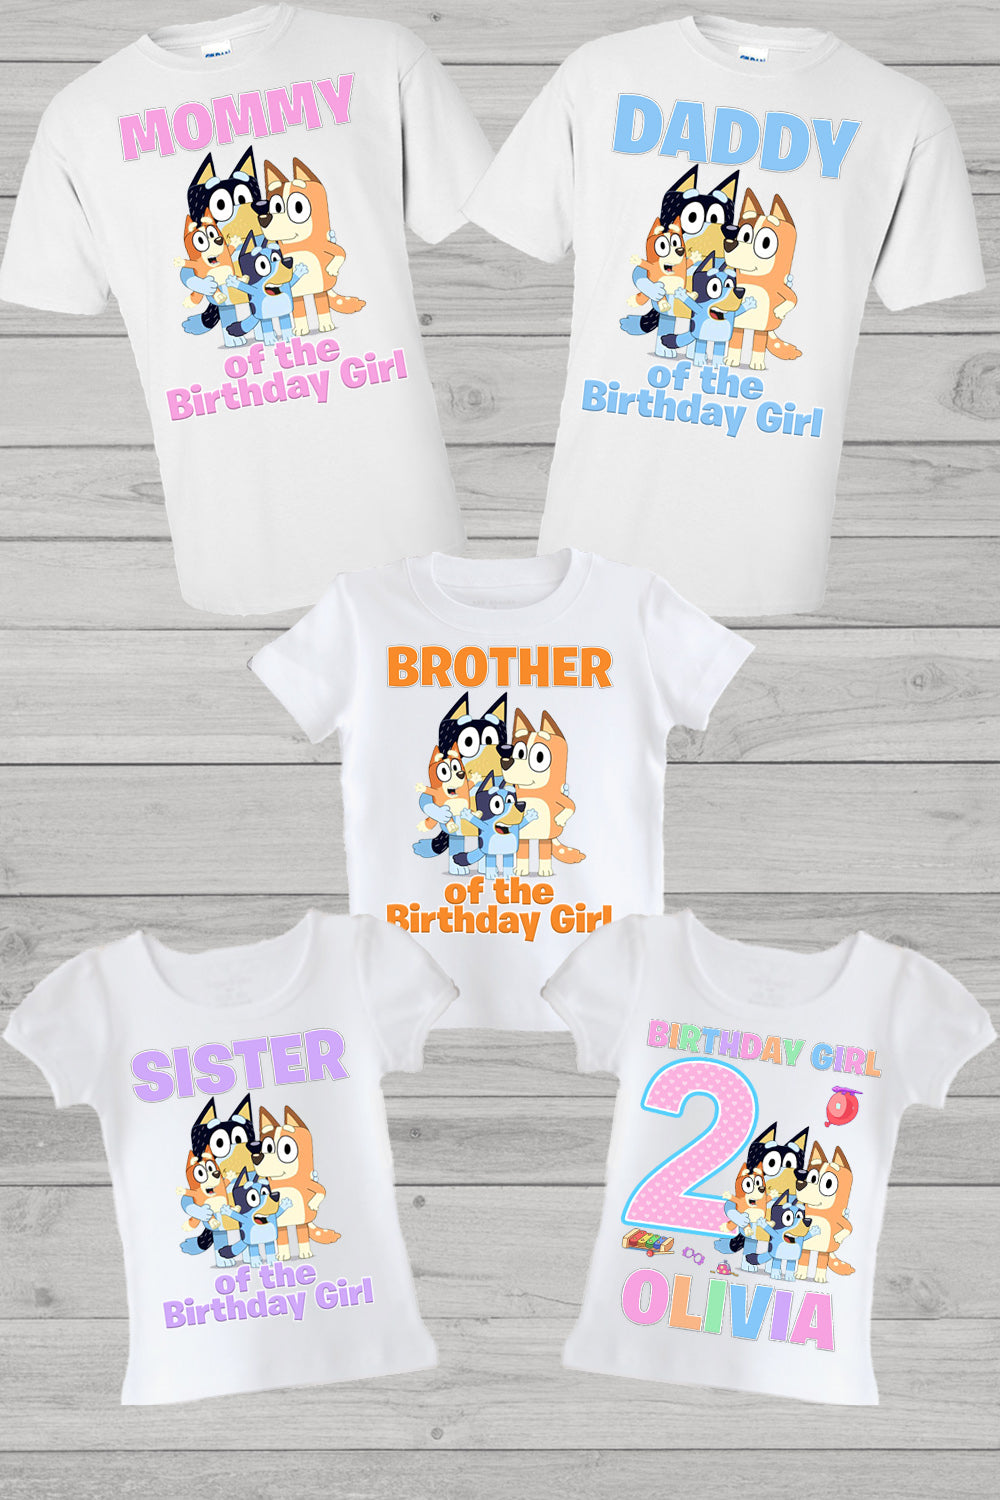 Bluey family birthday shirts